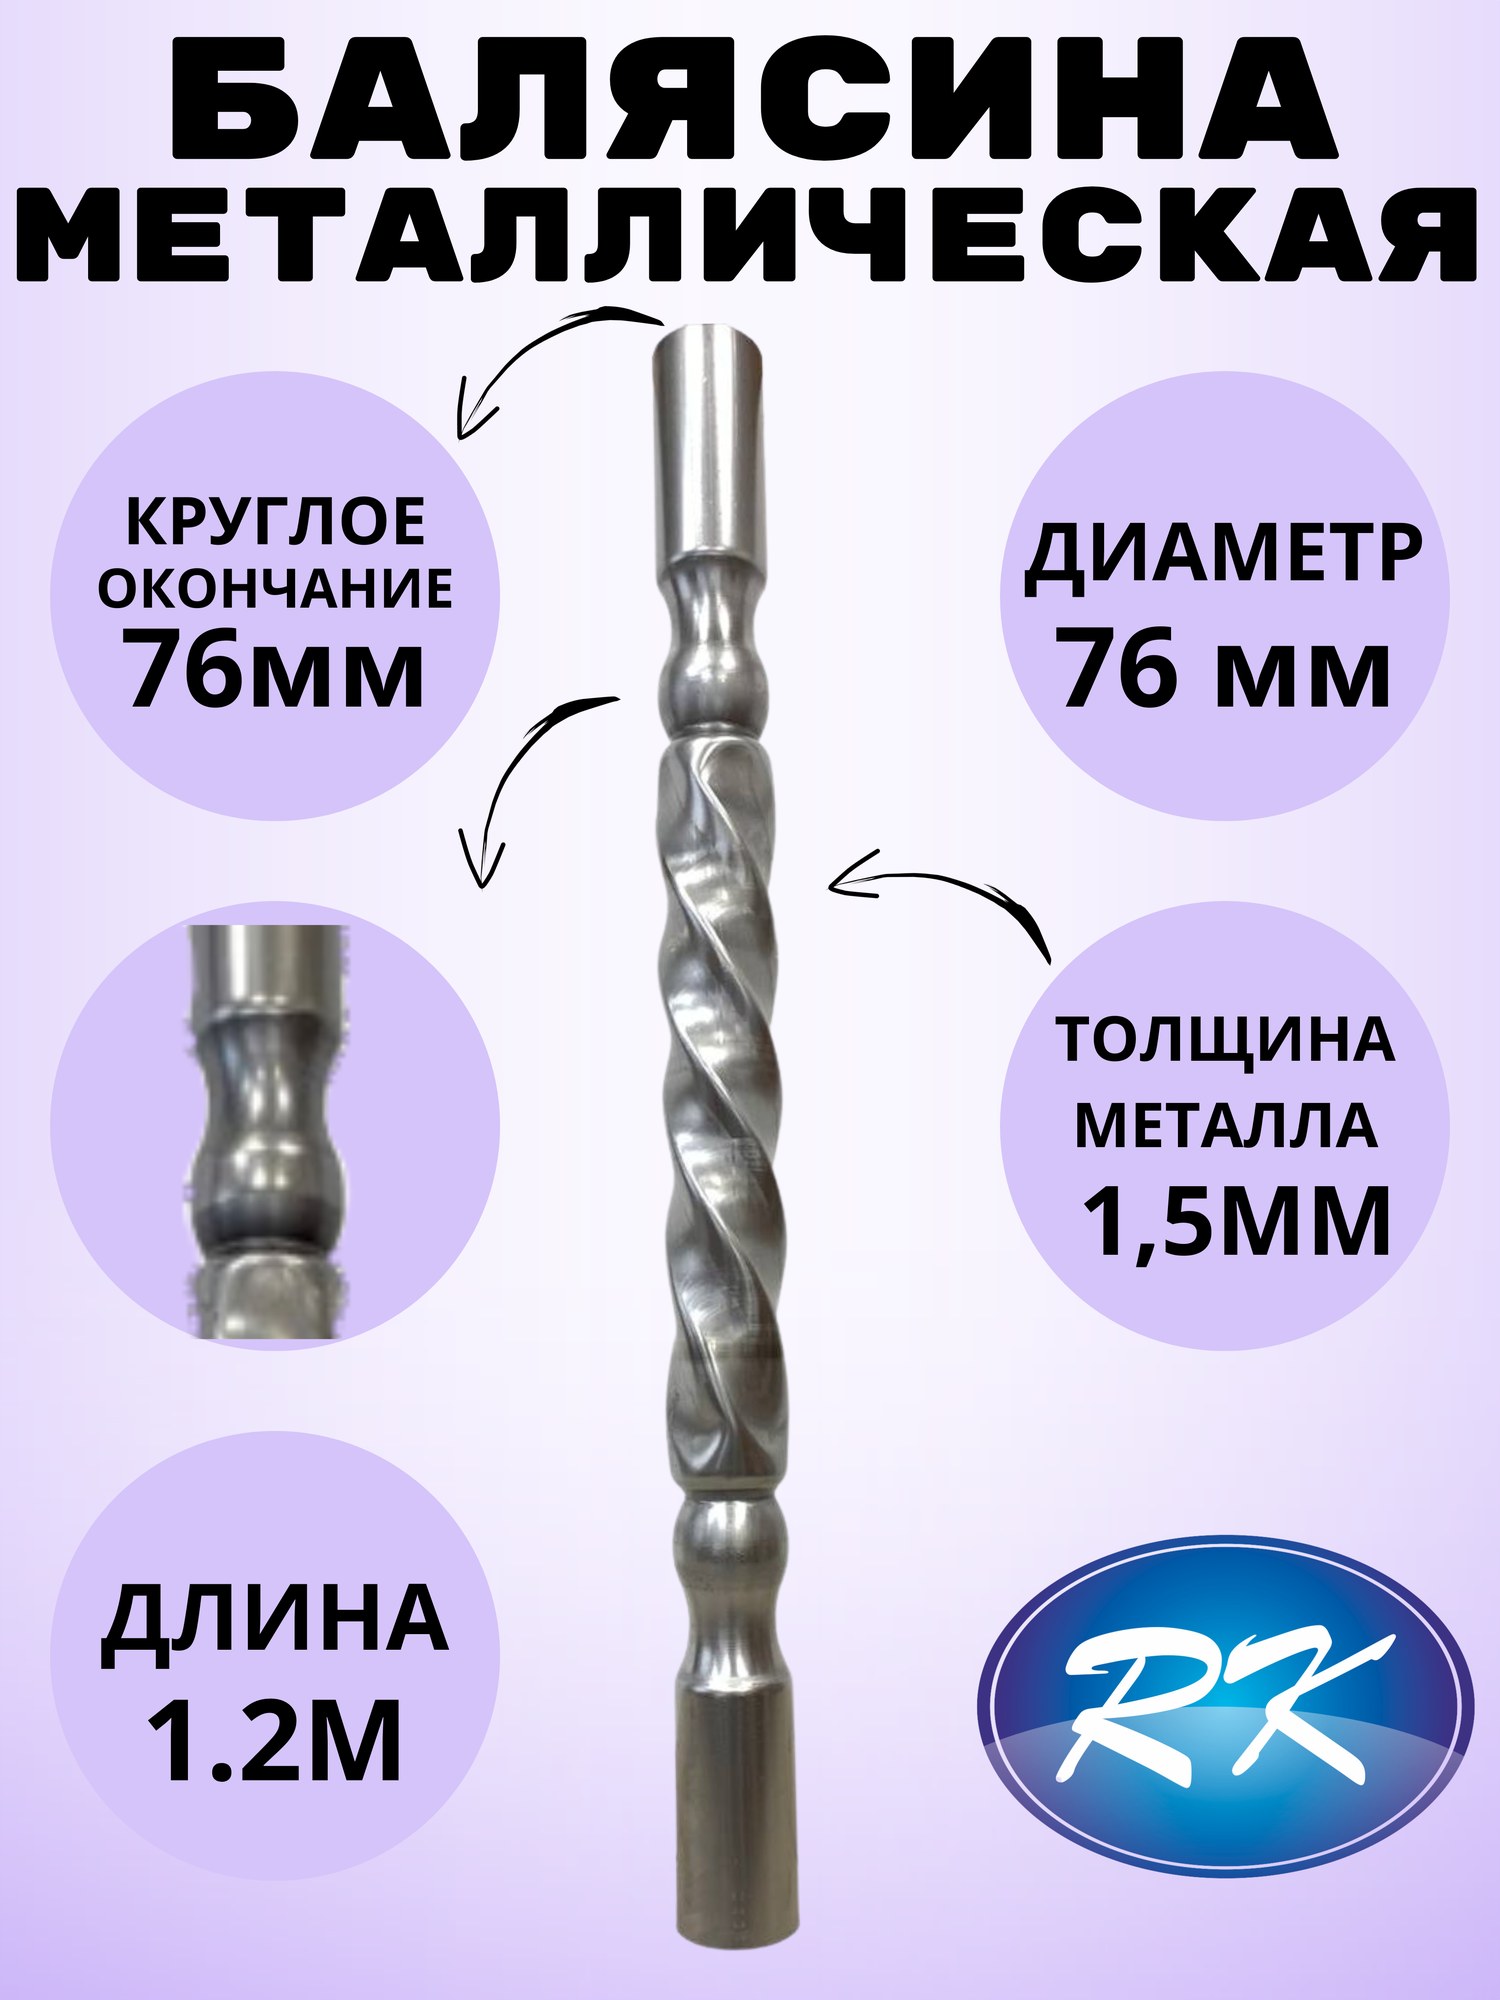 Балясина кованая металлическая Royal Kovka диаметр 76 мм круглые окончания диаметром 76 мм арт арт. 76.3 В. КР-1.2м